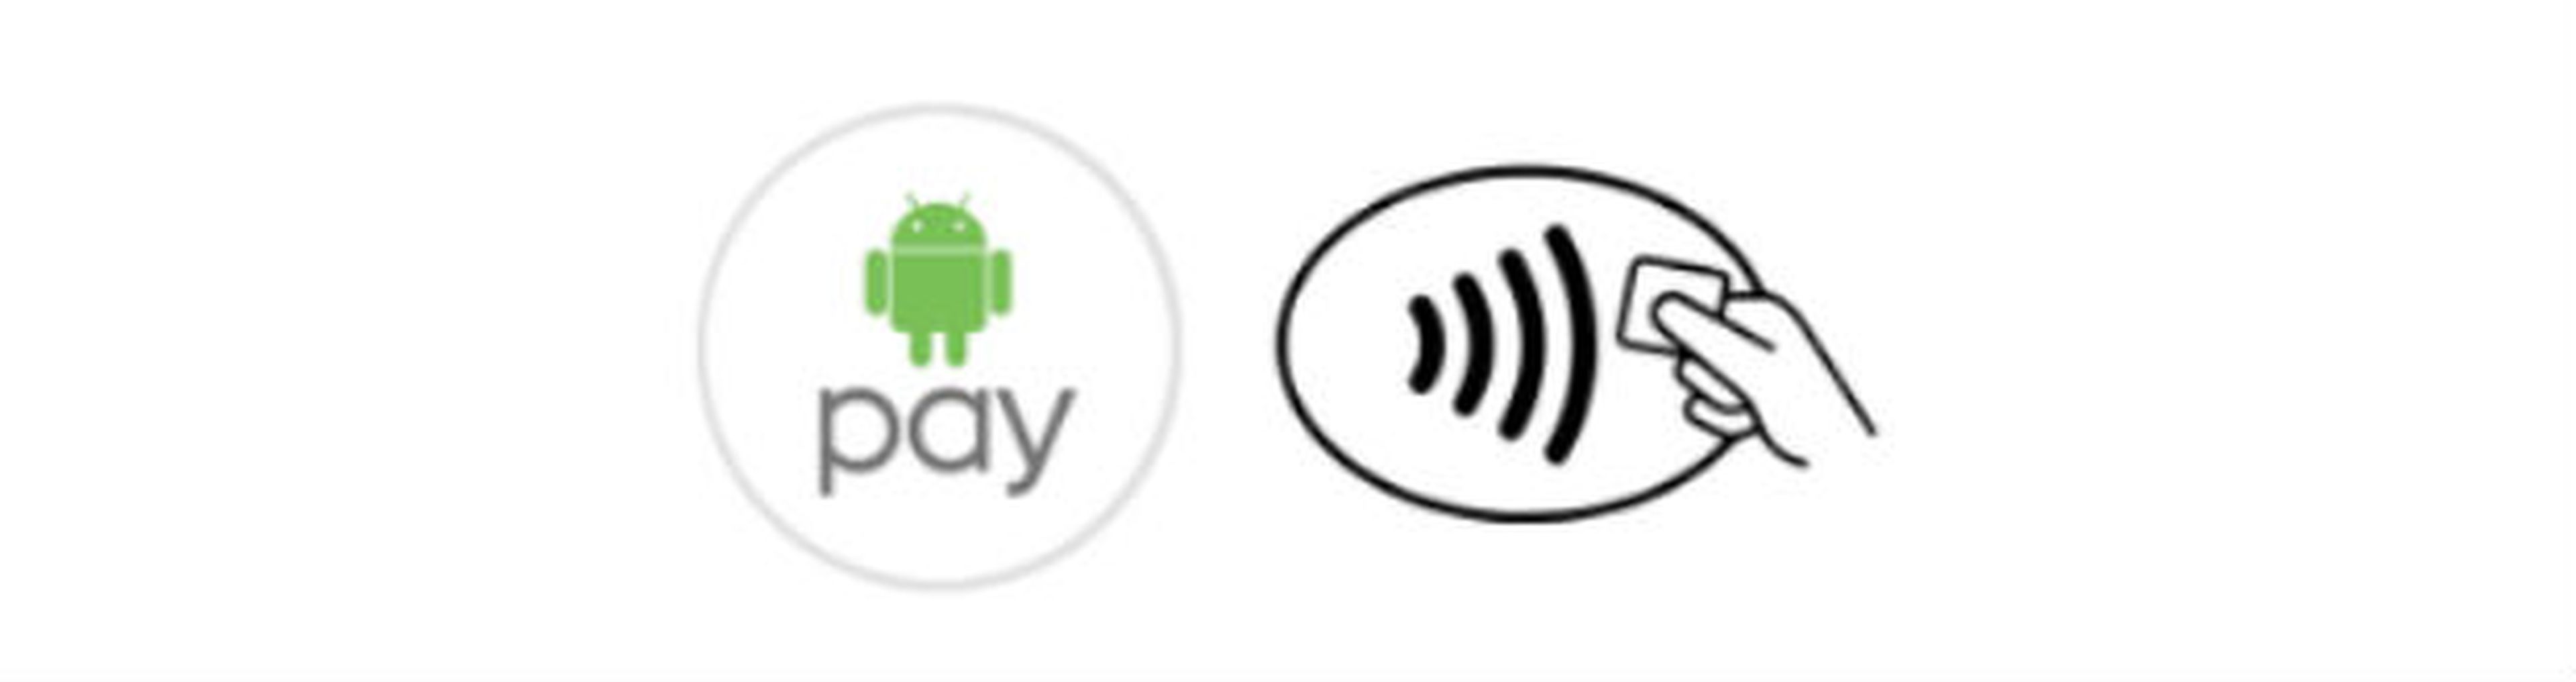 Android Pay, ya en España: cómo y dónde pagar con tu móvil